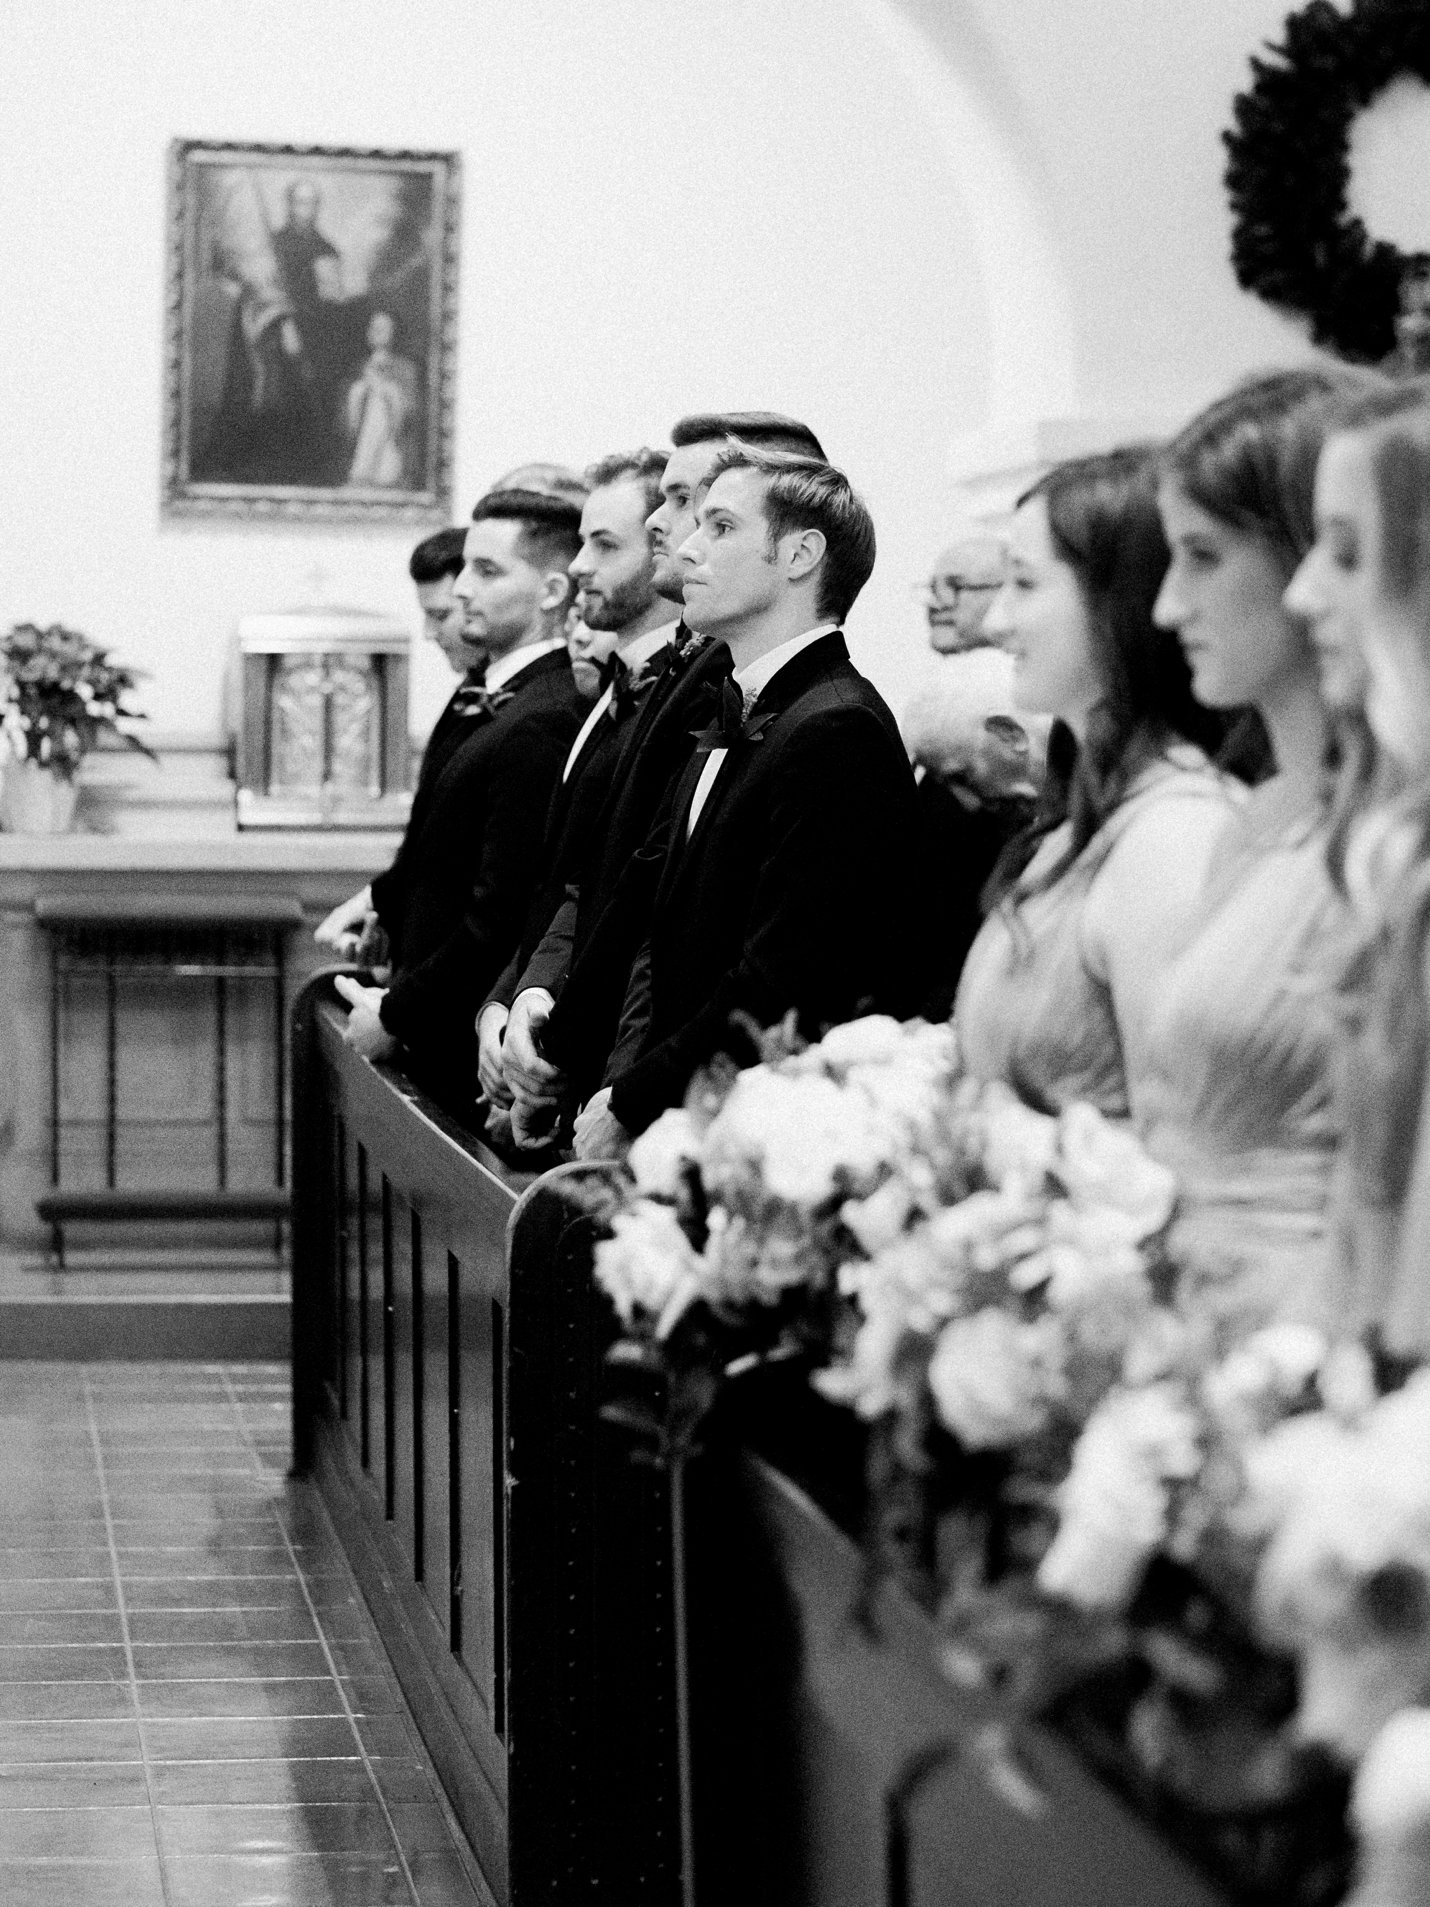 Brophy Chapel wedding - Scottsdale Wedding Photographer - Rachel Solomon Photography